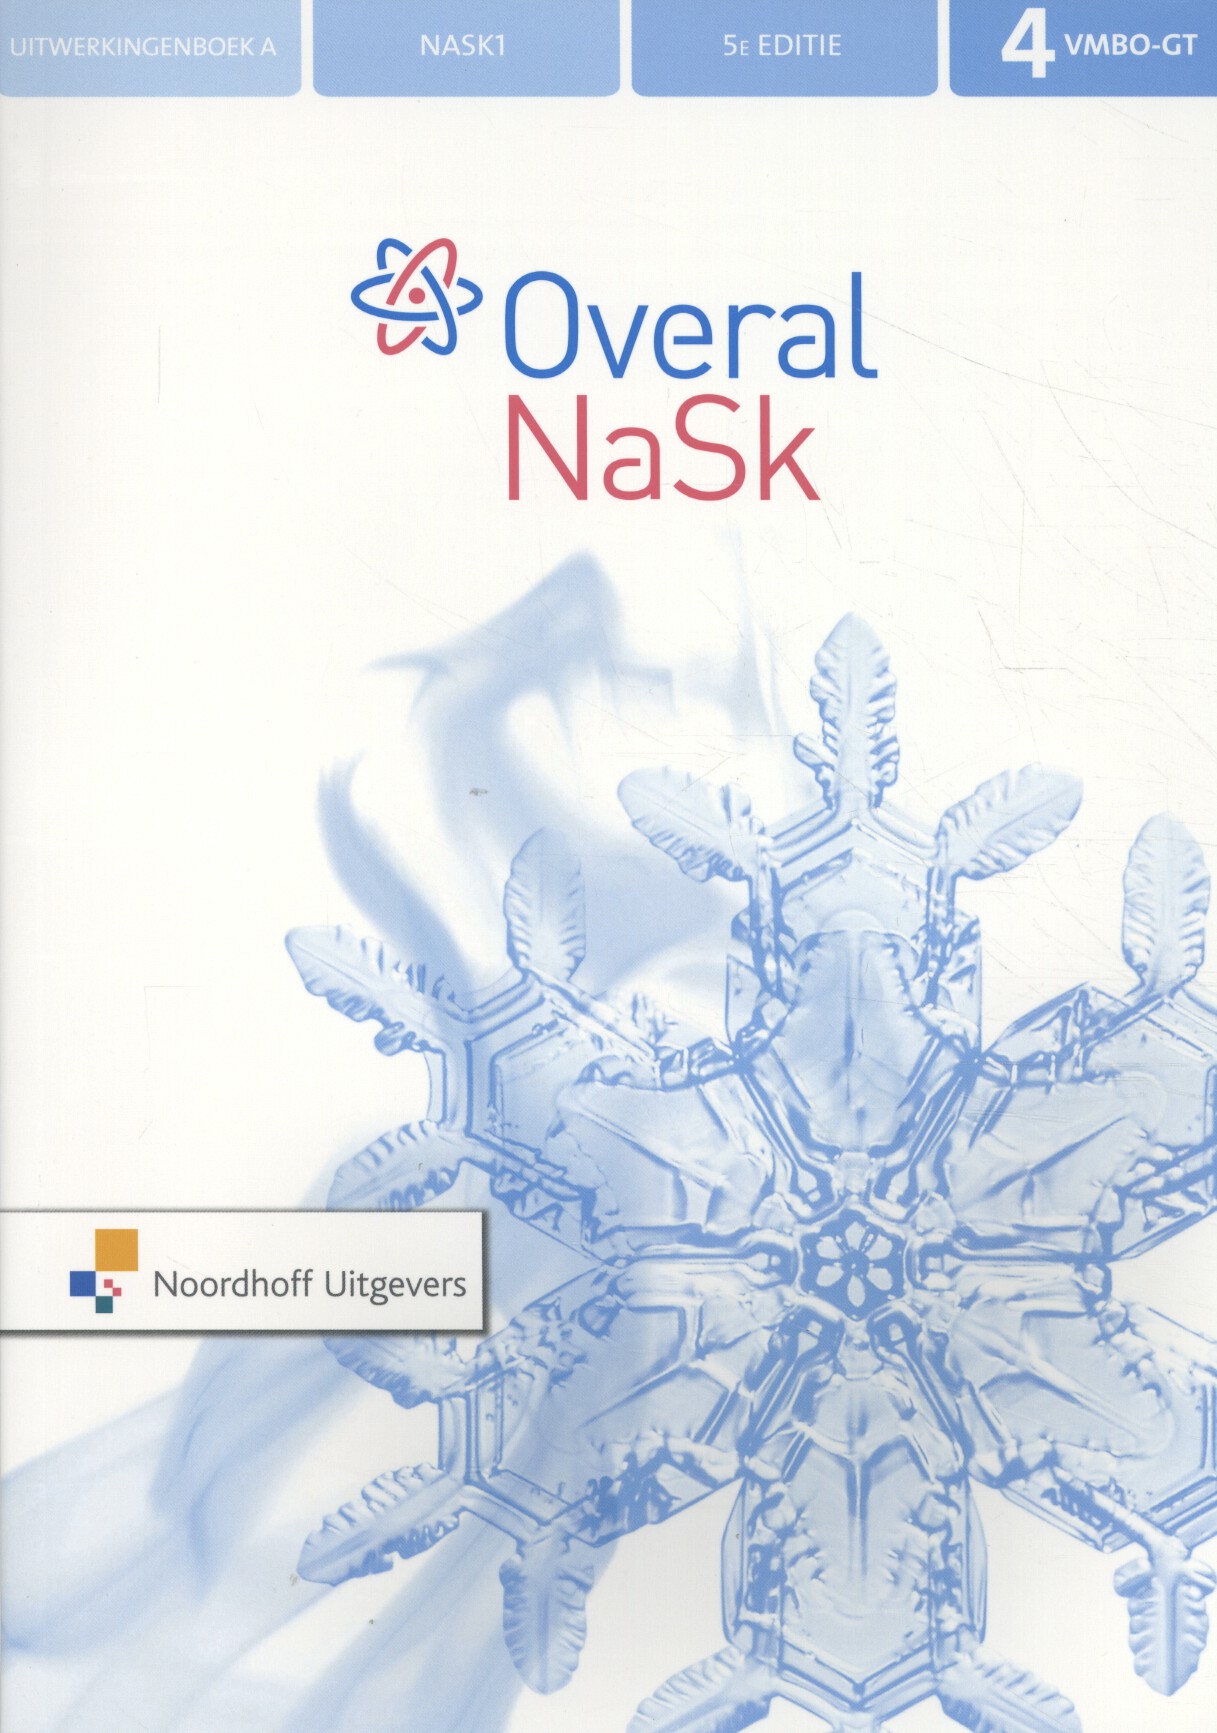 Overal NaSk1 4 vmbo-gt uitwerkingenboek A